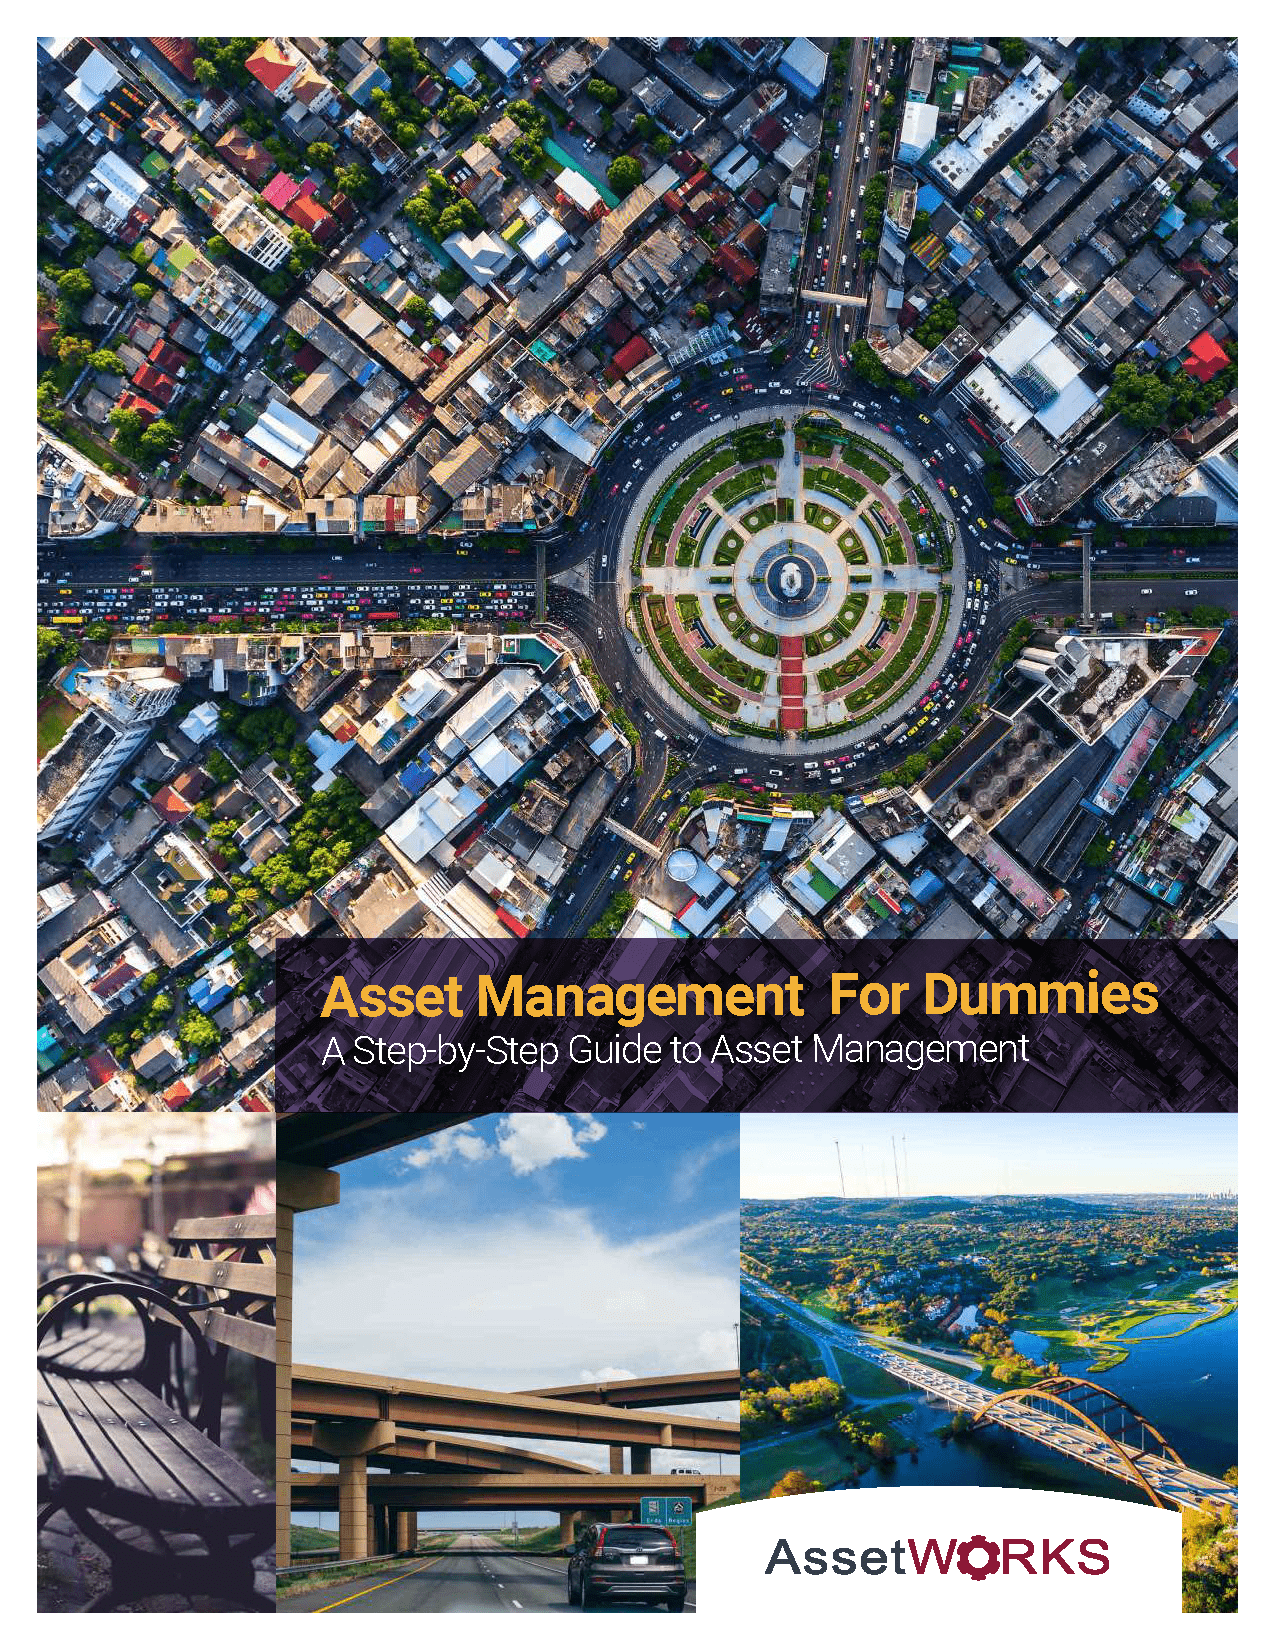 AssetManagementForDummies-002_Page_1